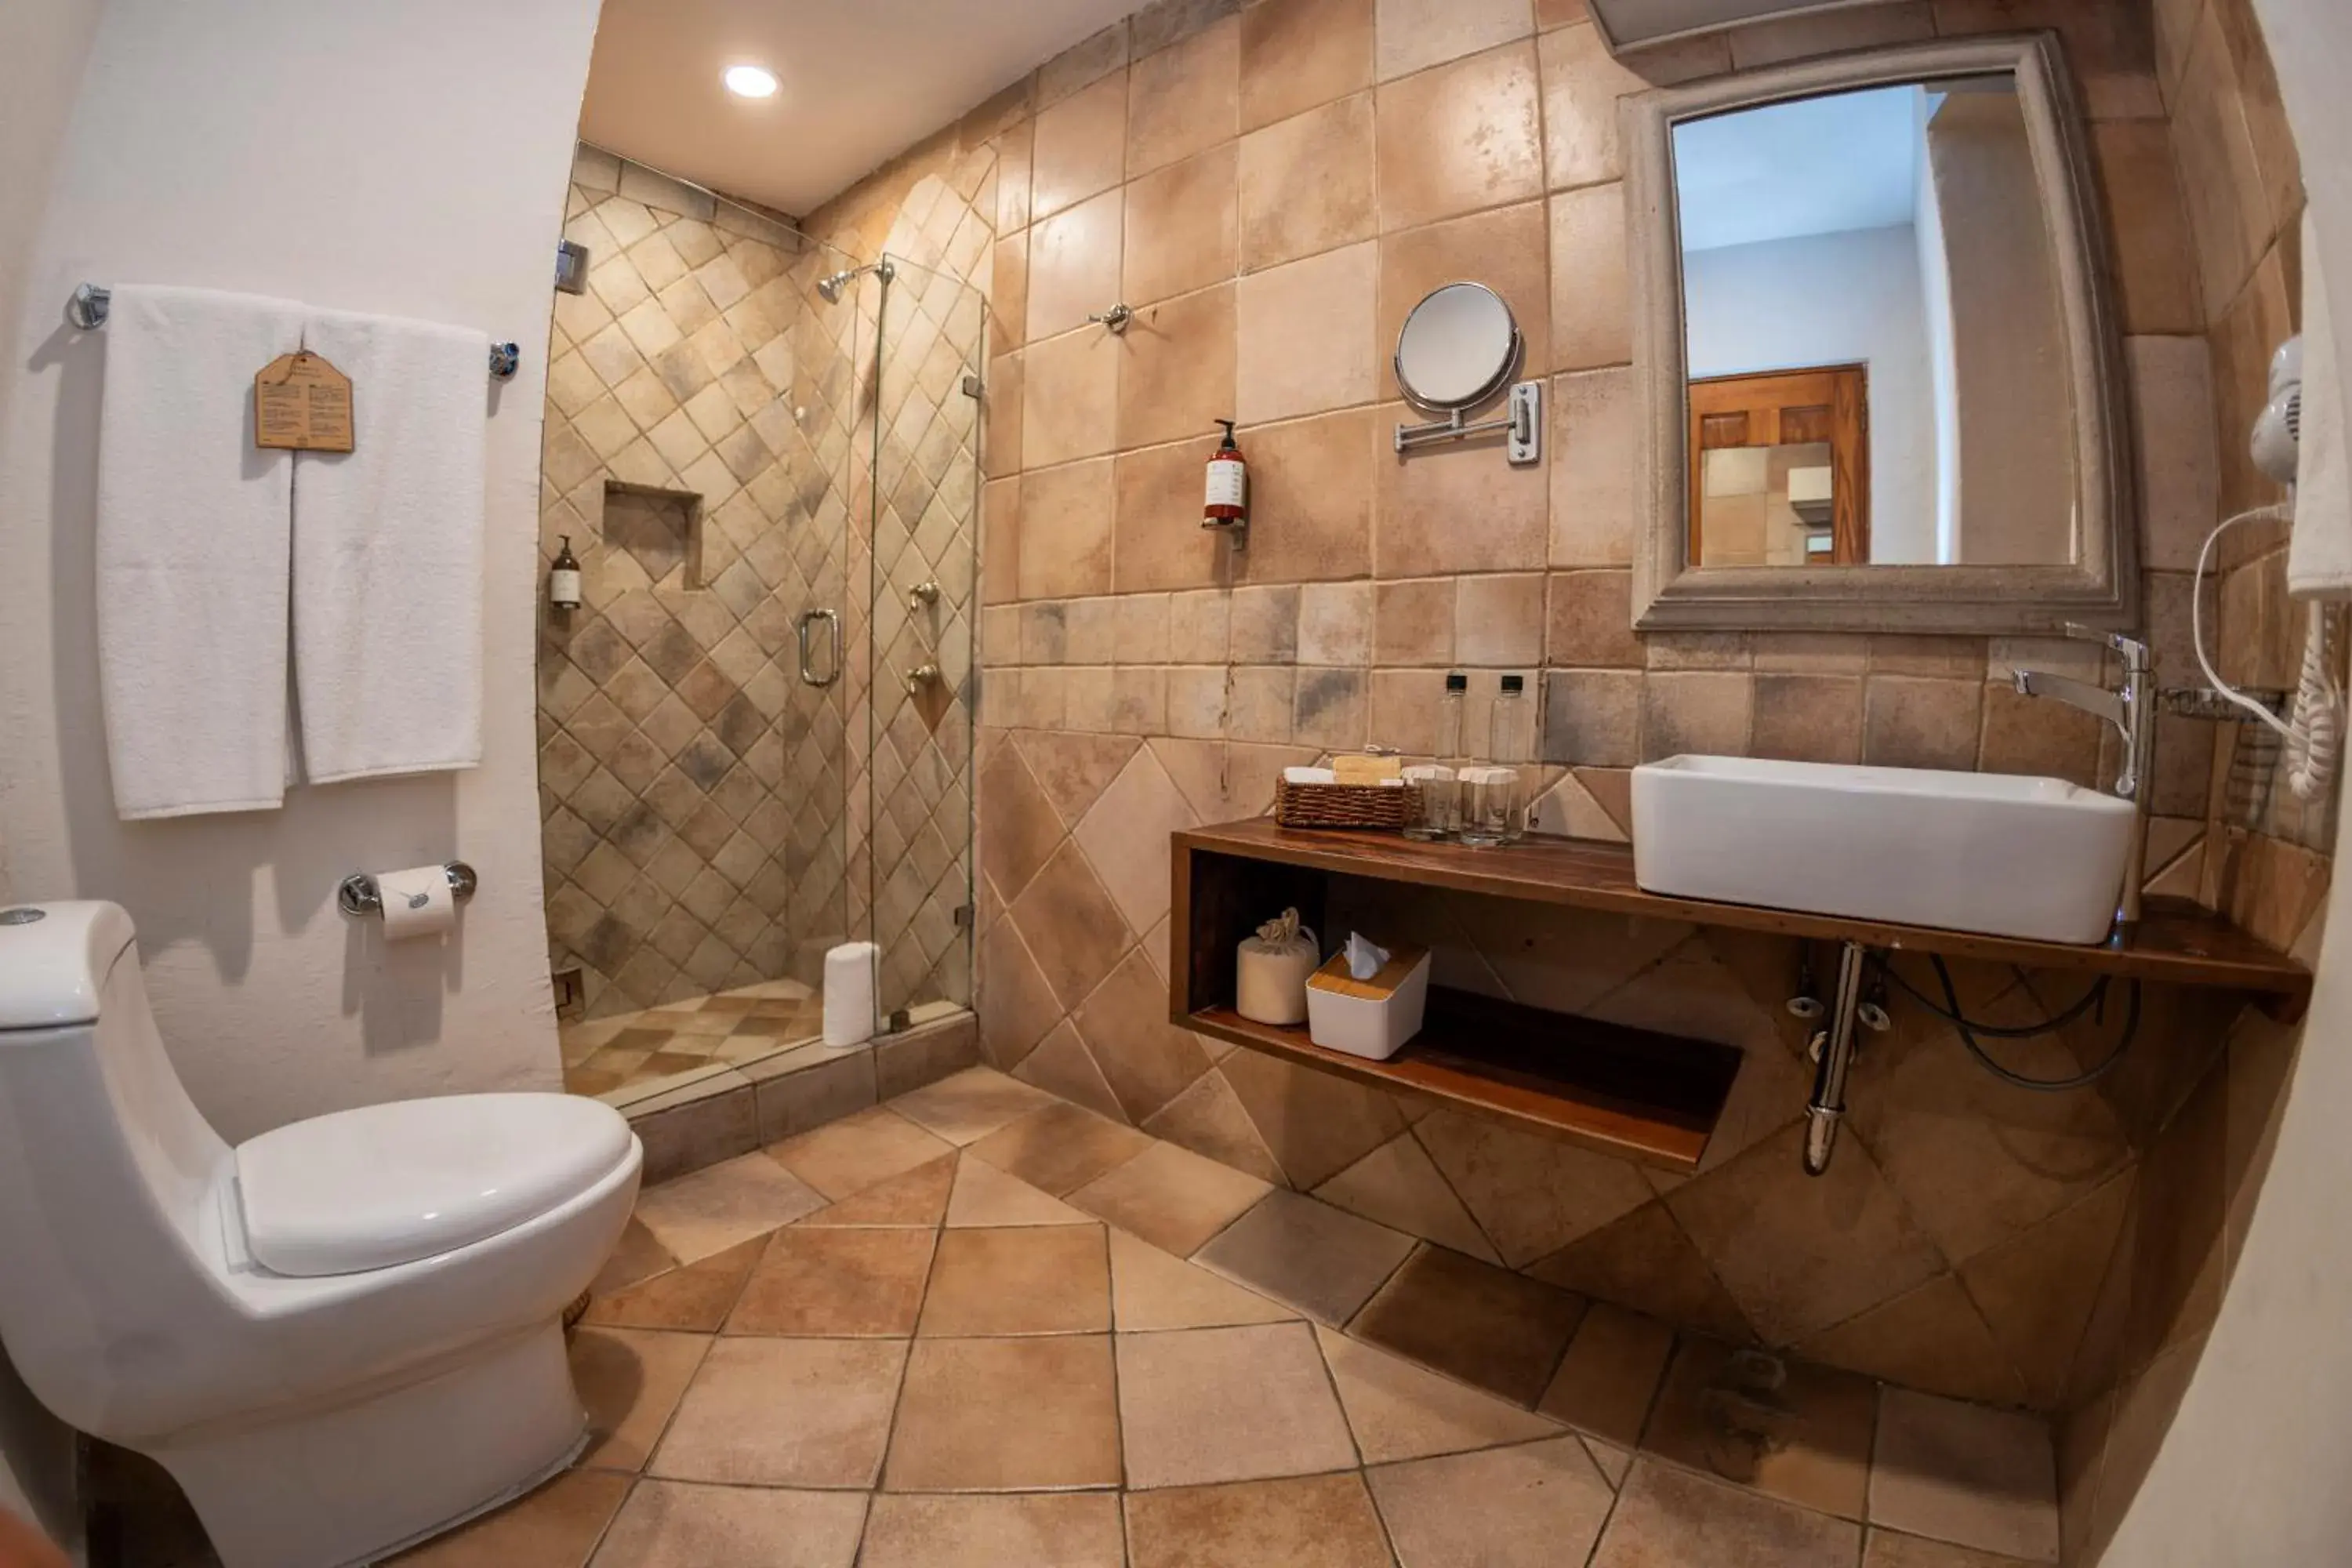 Area and facilities, Bathroom in Casa De Sierra Azul